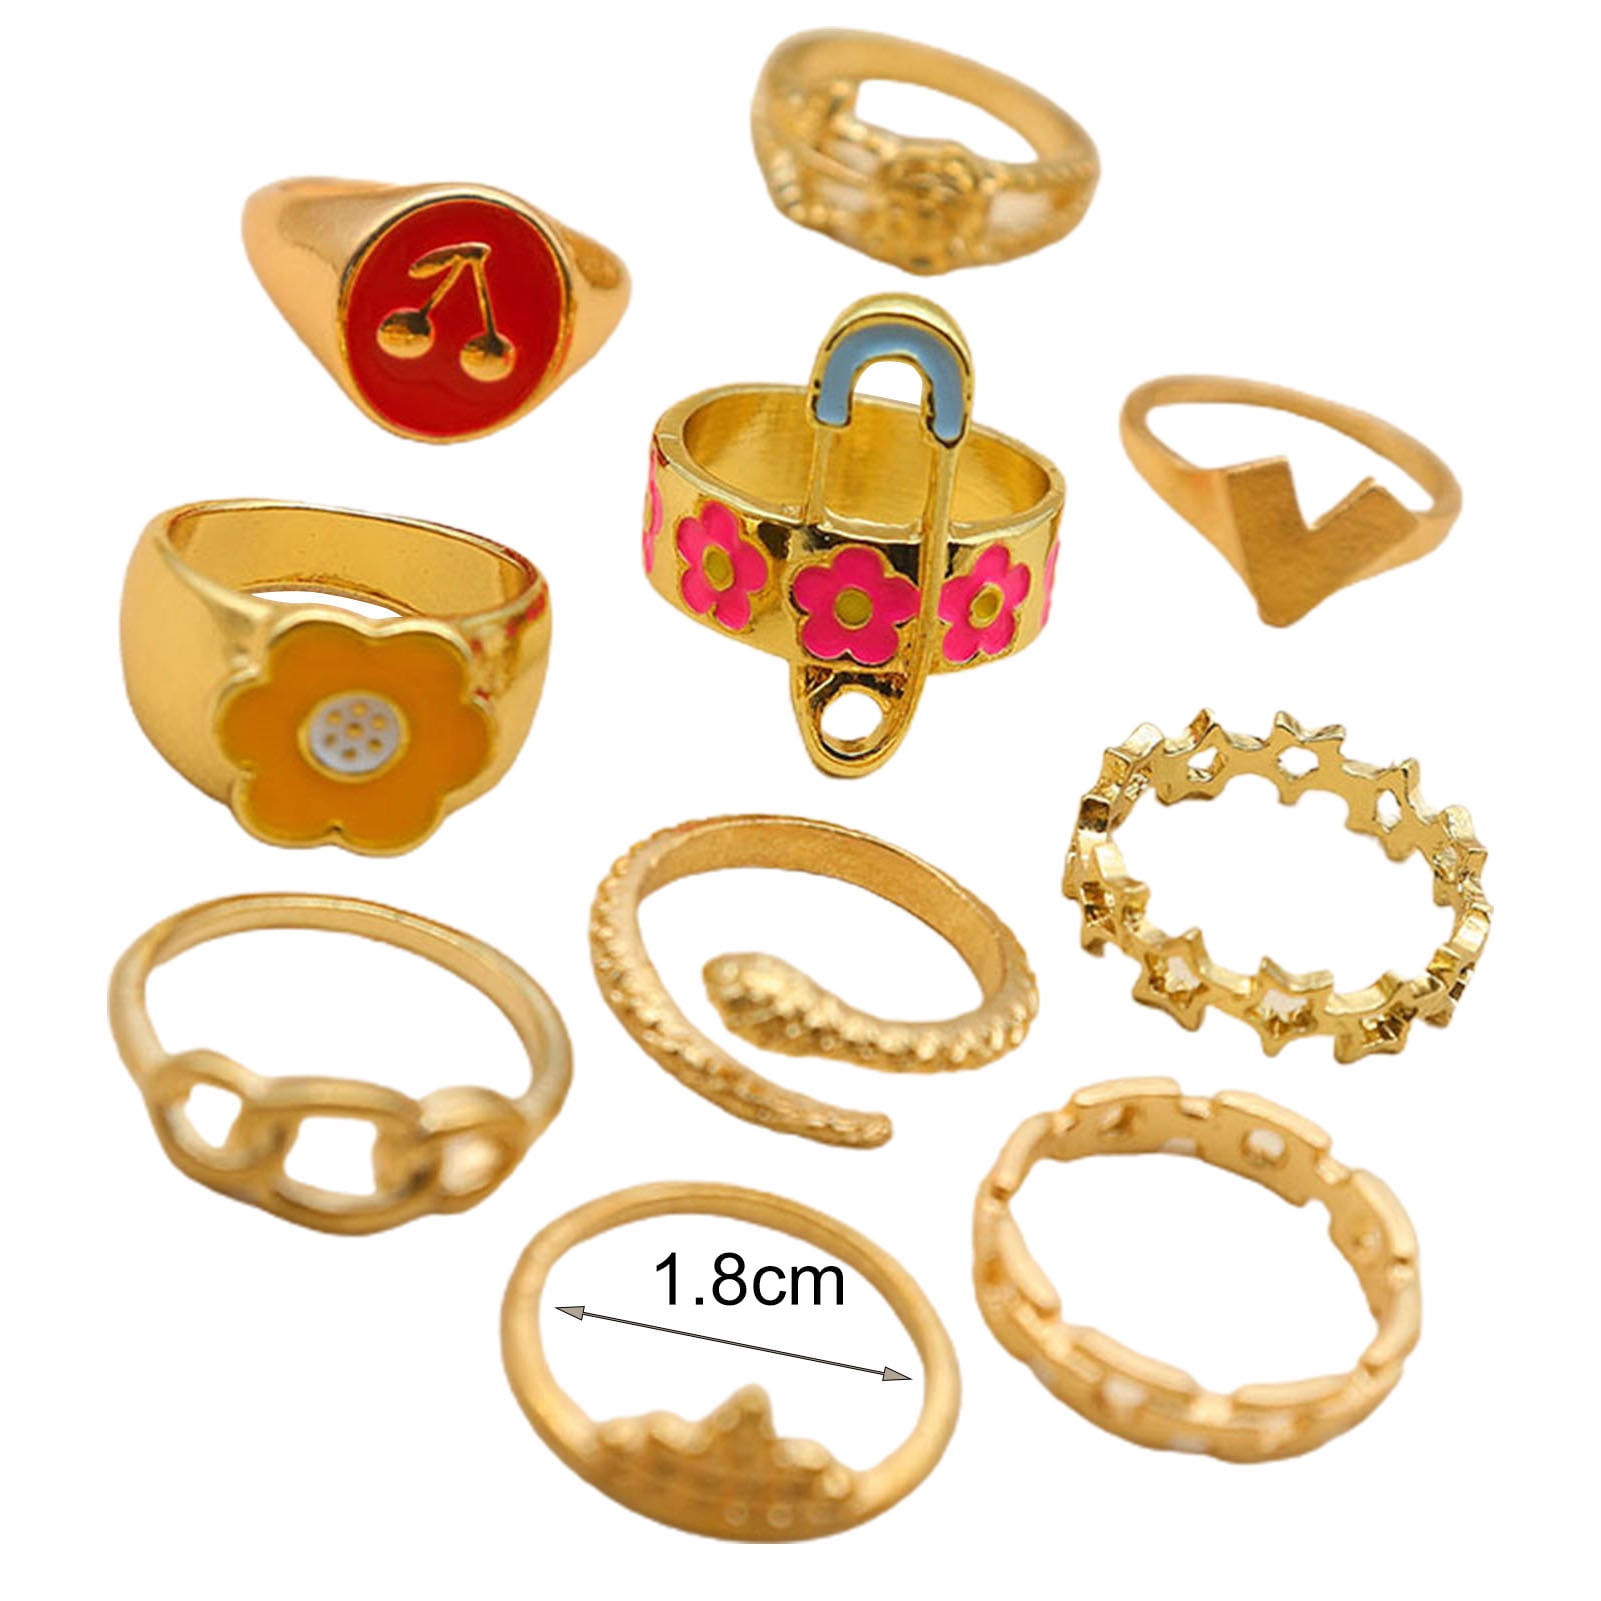 22k Plain Gold Ring JMC-2112-05316 – Jewelegance